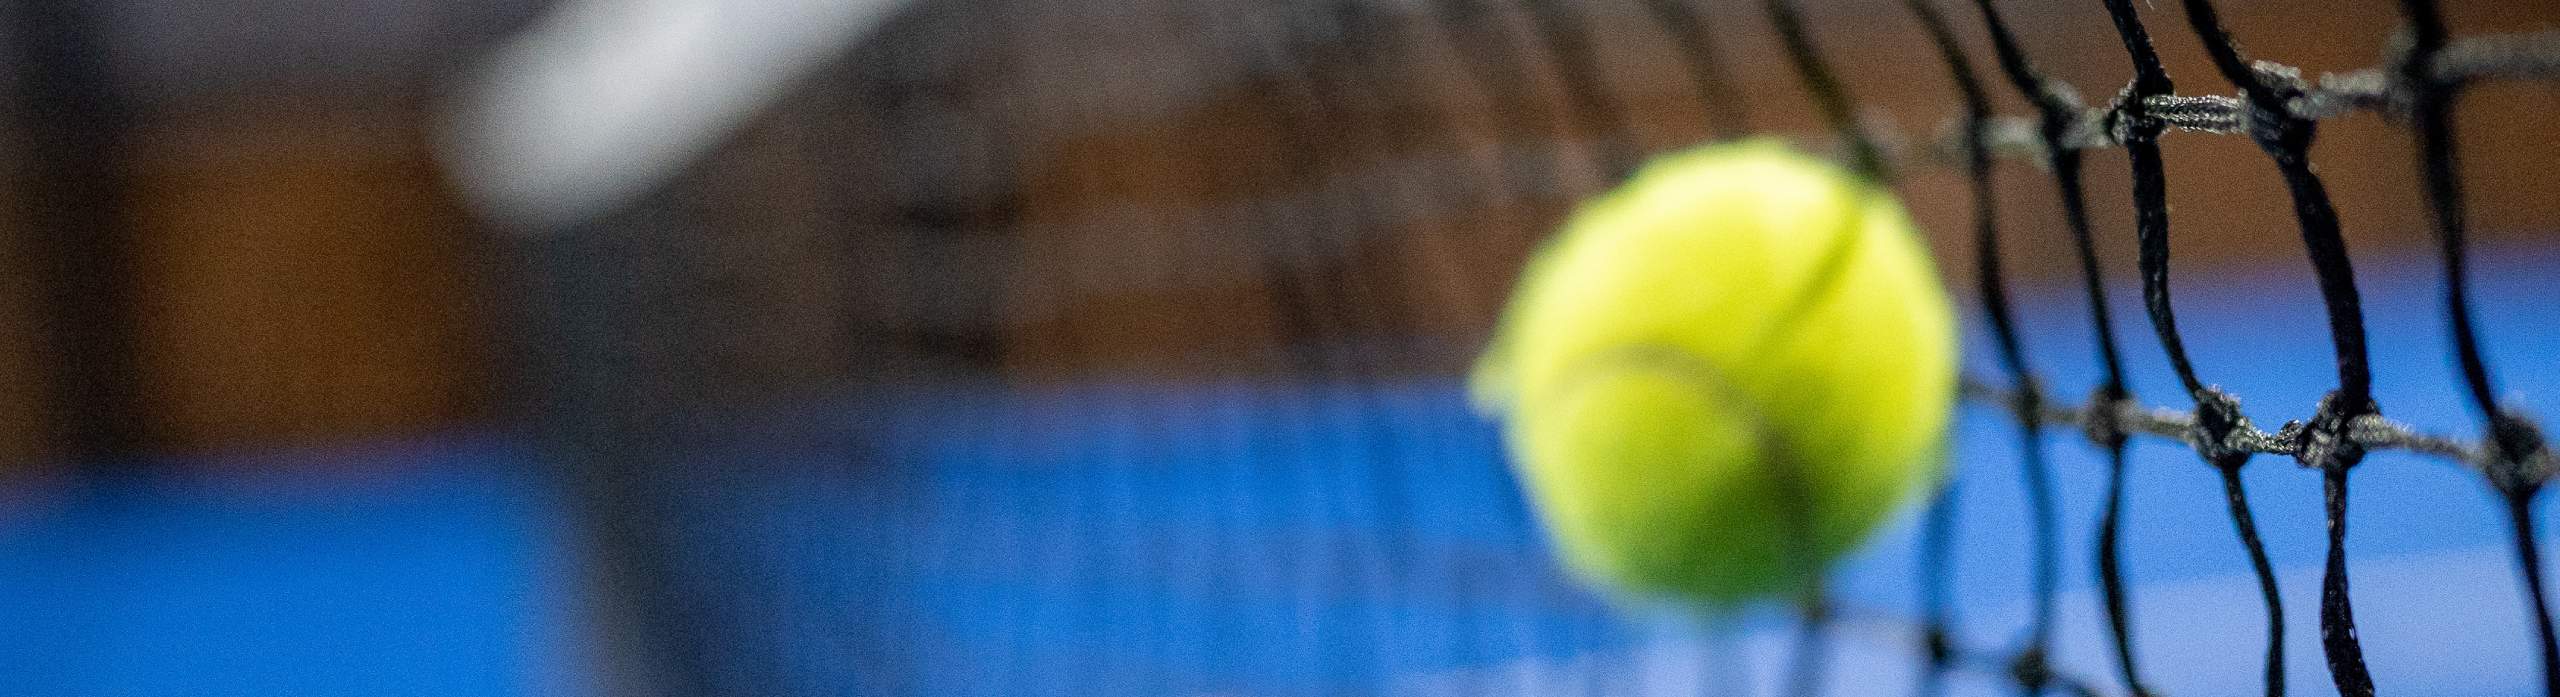 padel-4-all-tennis